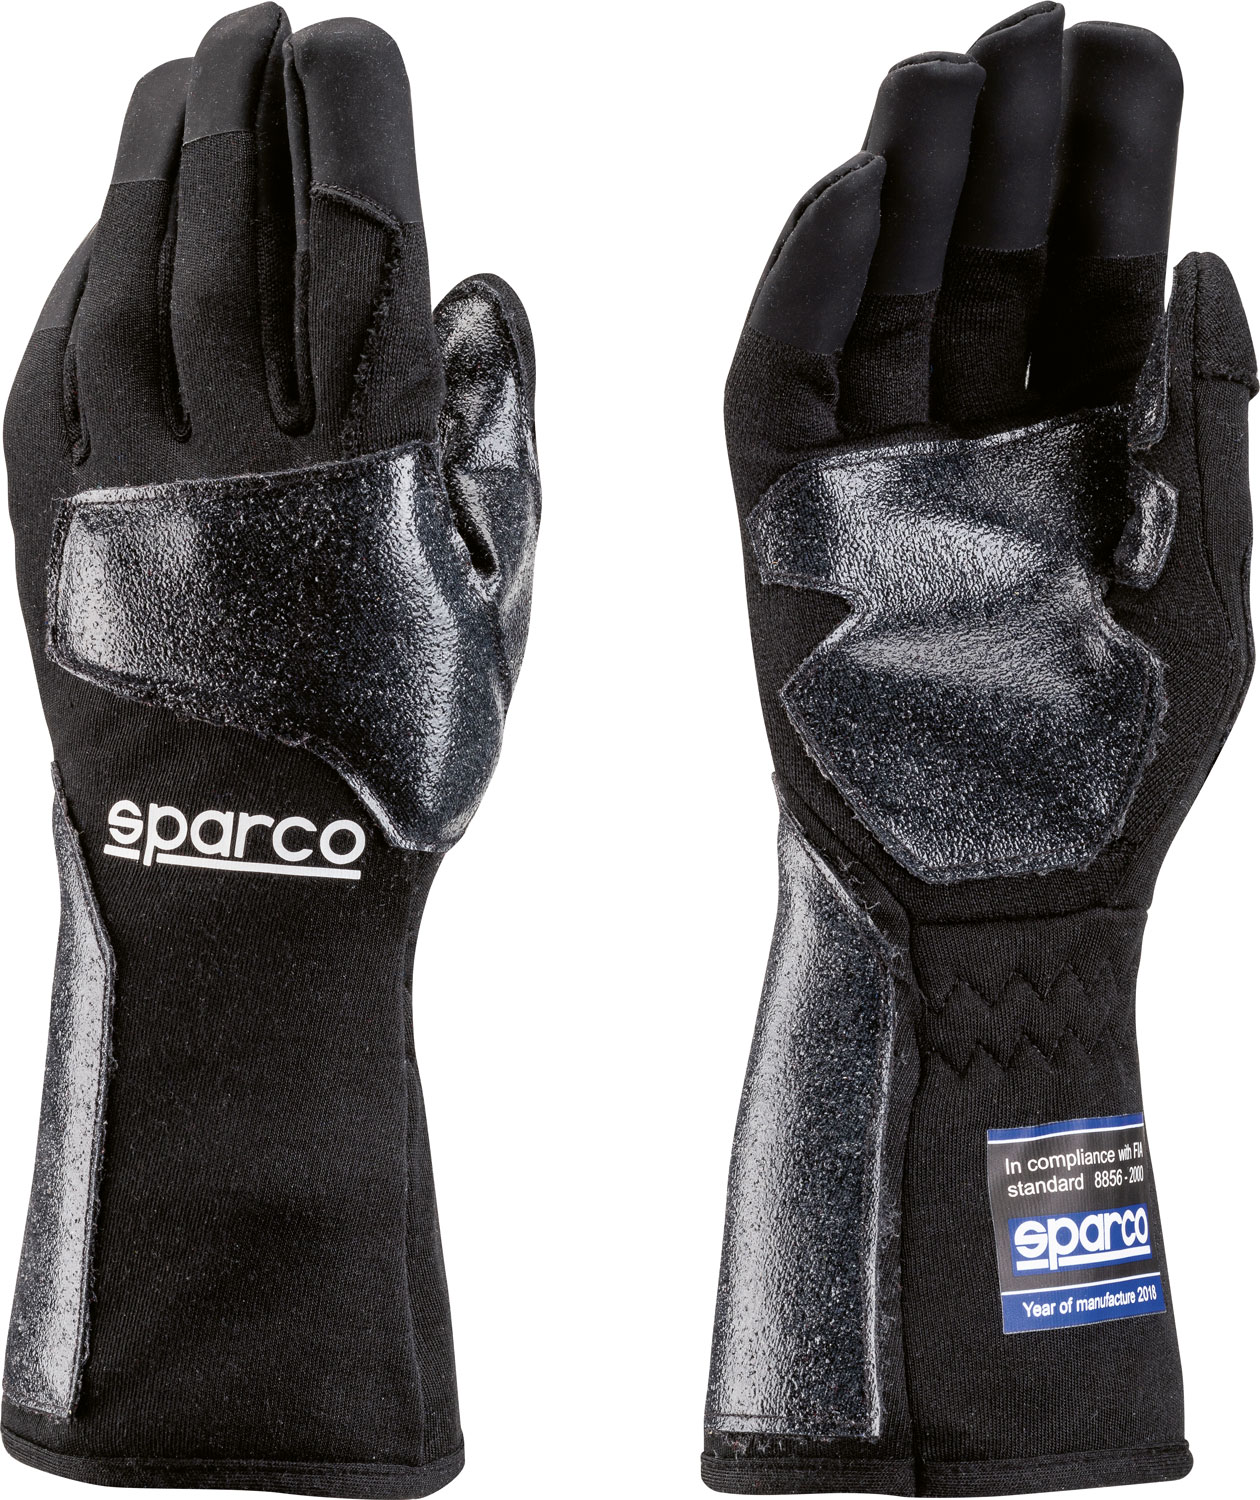 Sparco Handschuh Meca RMG-7, schwarz